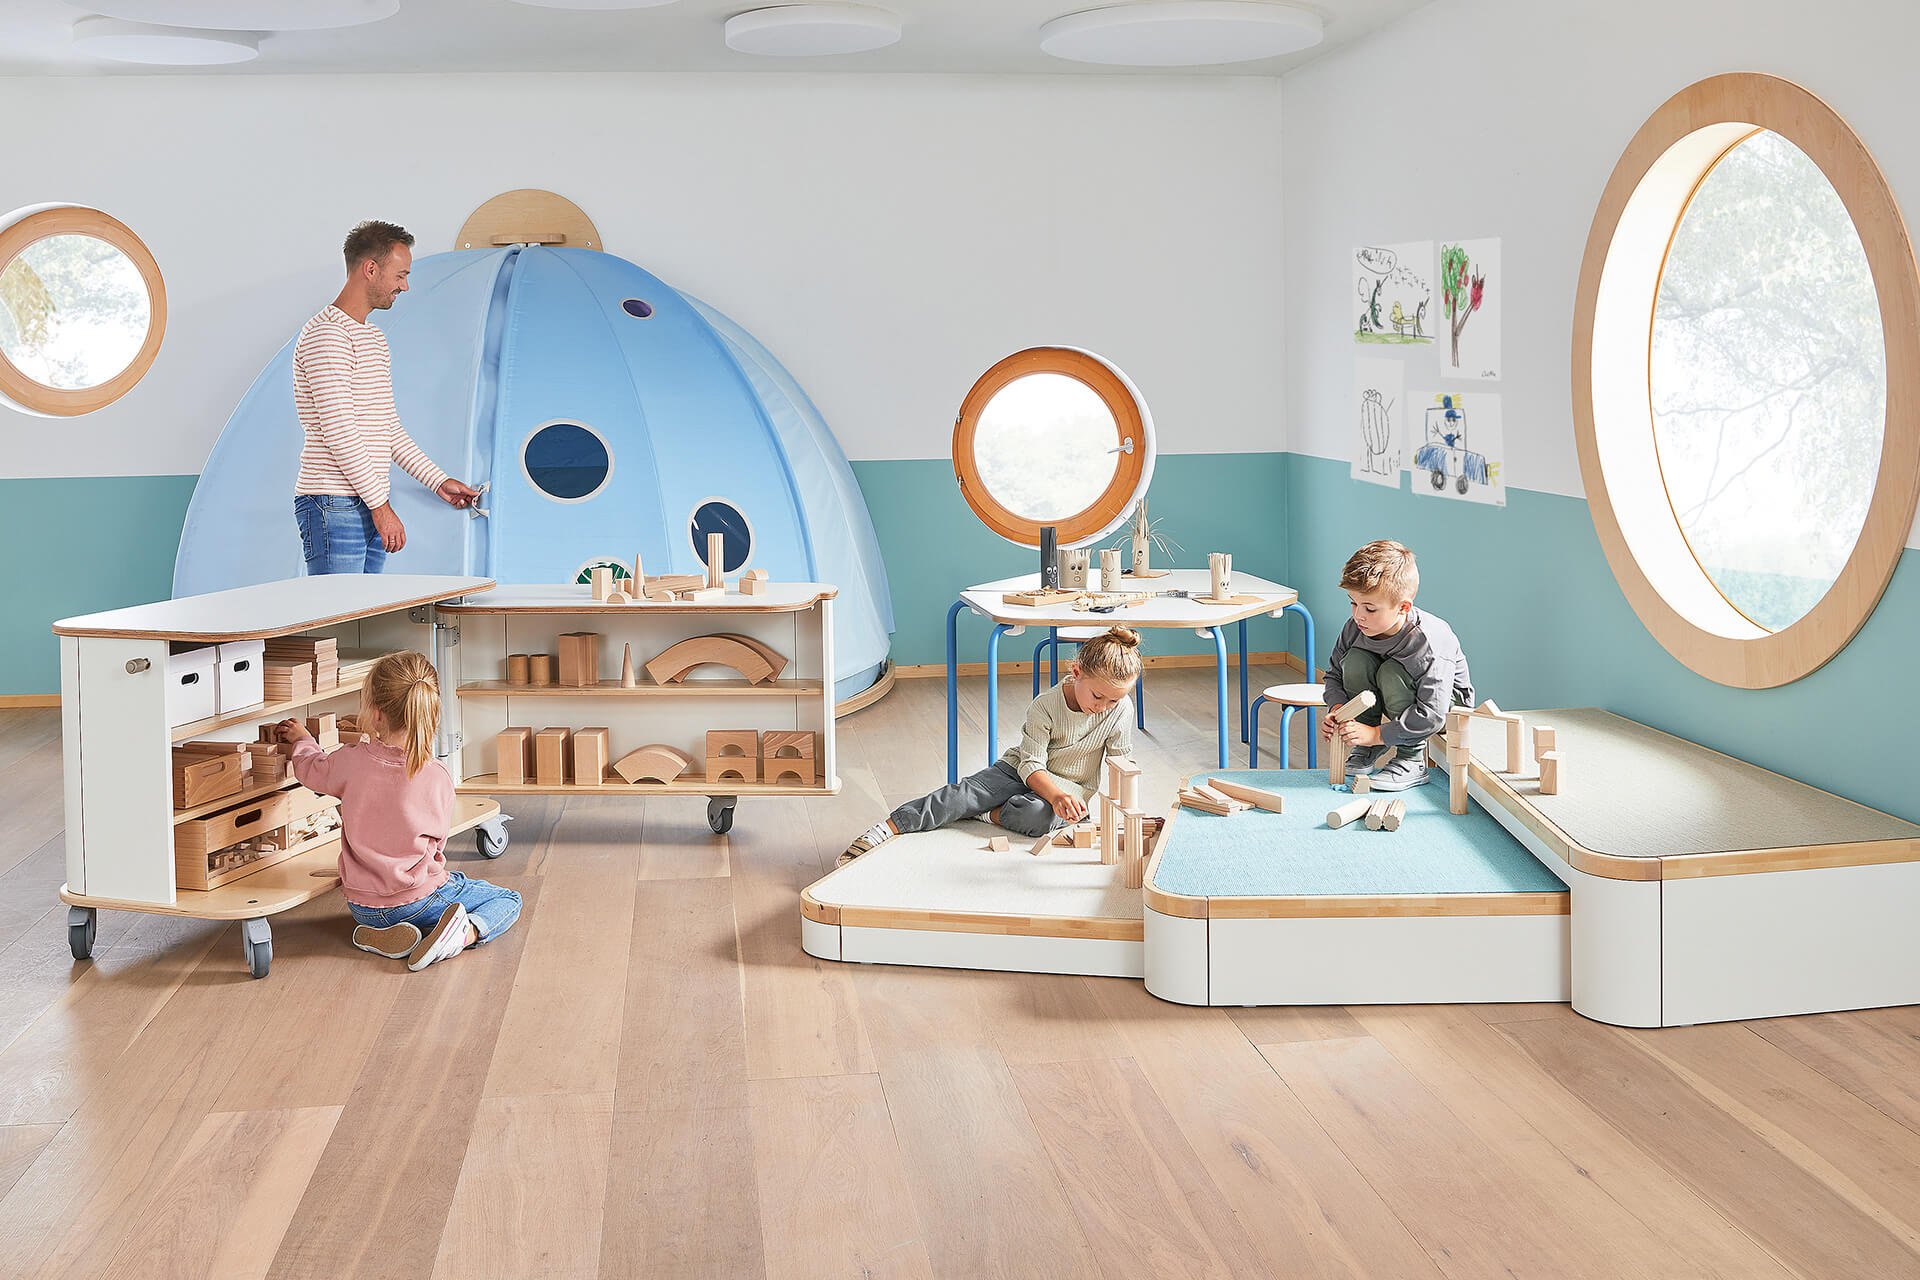 Spielraum | Erzieher mit drei Kindern, die auf einem Dreier-Podest mit Bauklötzchen spielen, ein Mädchen sortiert Spielzeug in den Materialschrank, Erzieher steht am hellblauen Kuppelzelt